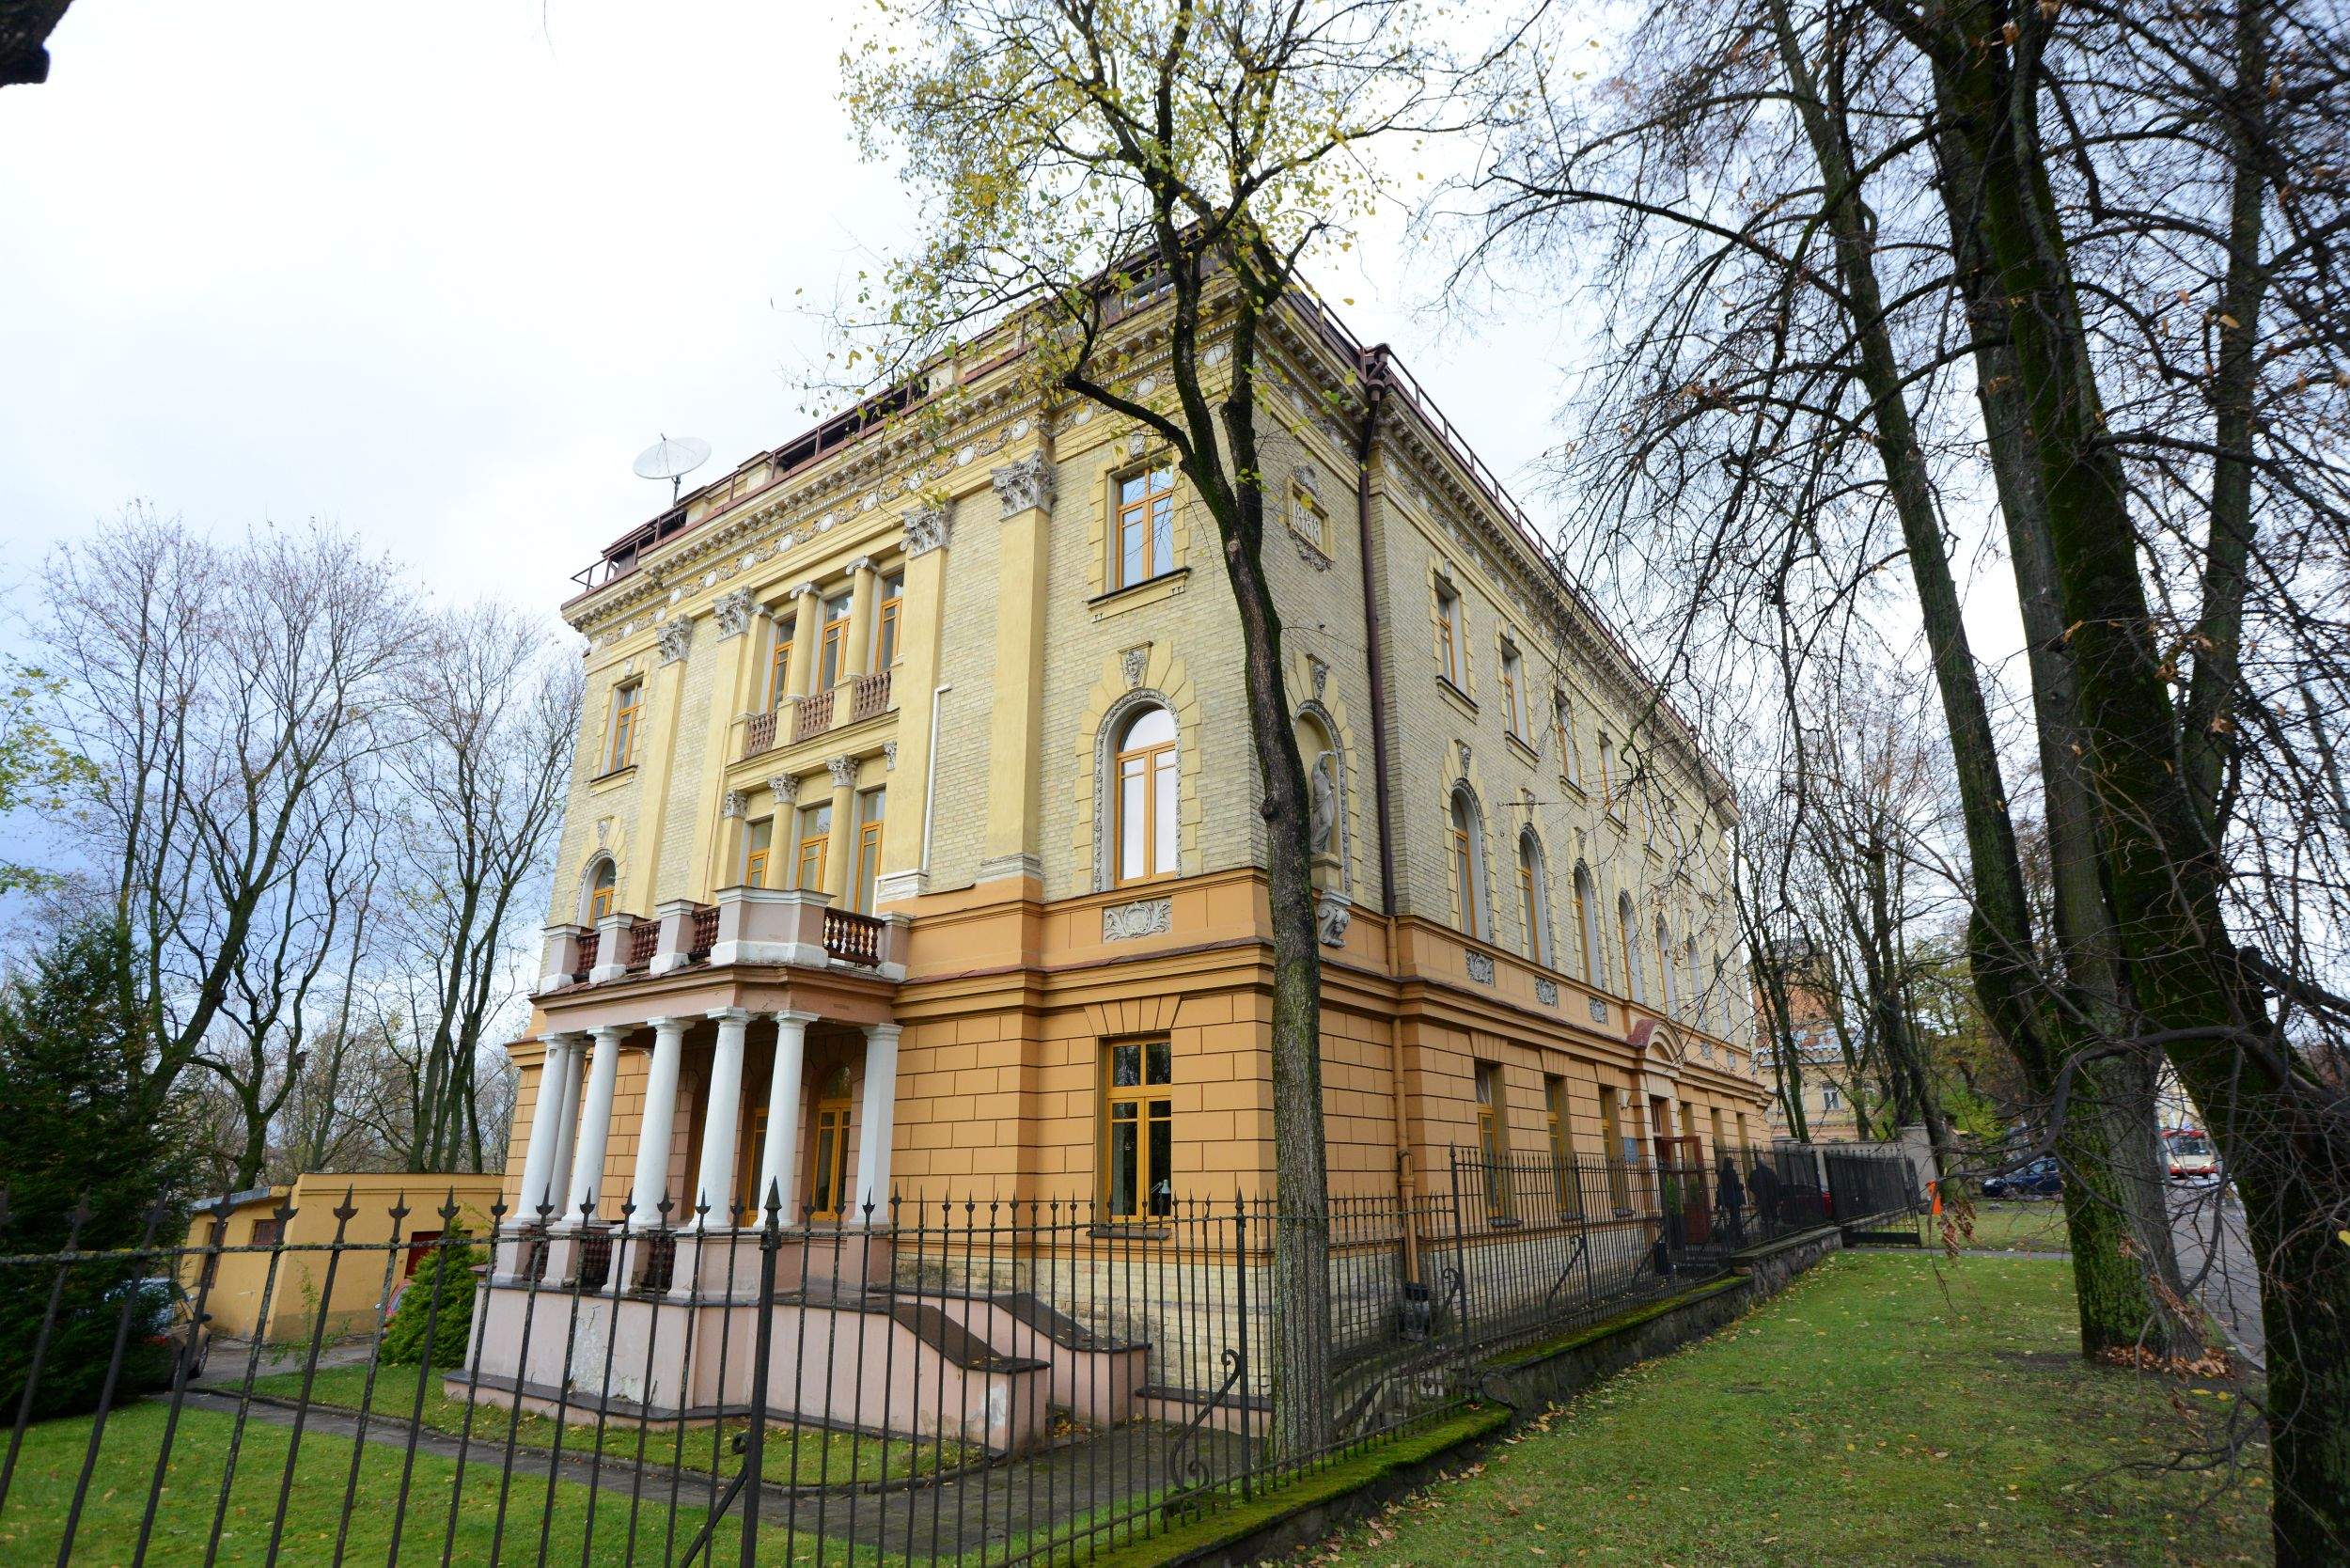 Vilniaus prekybos, pramonės ir amatų rūmai